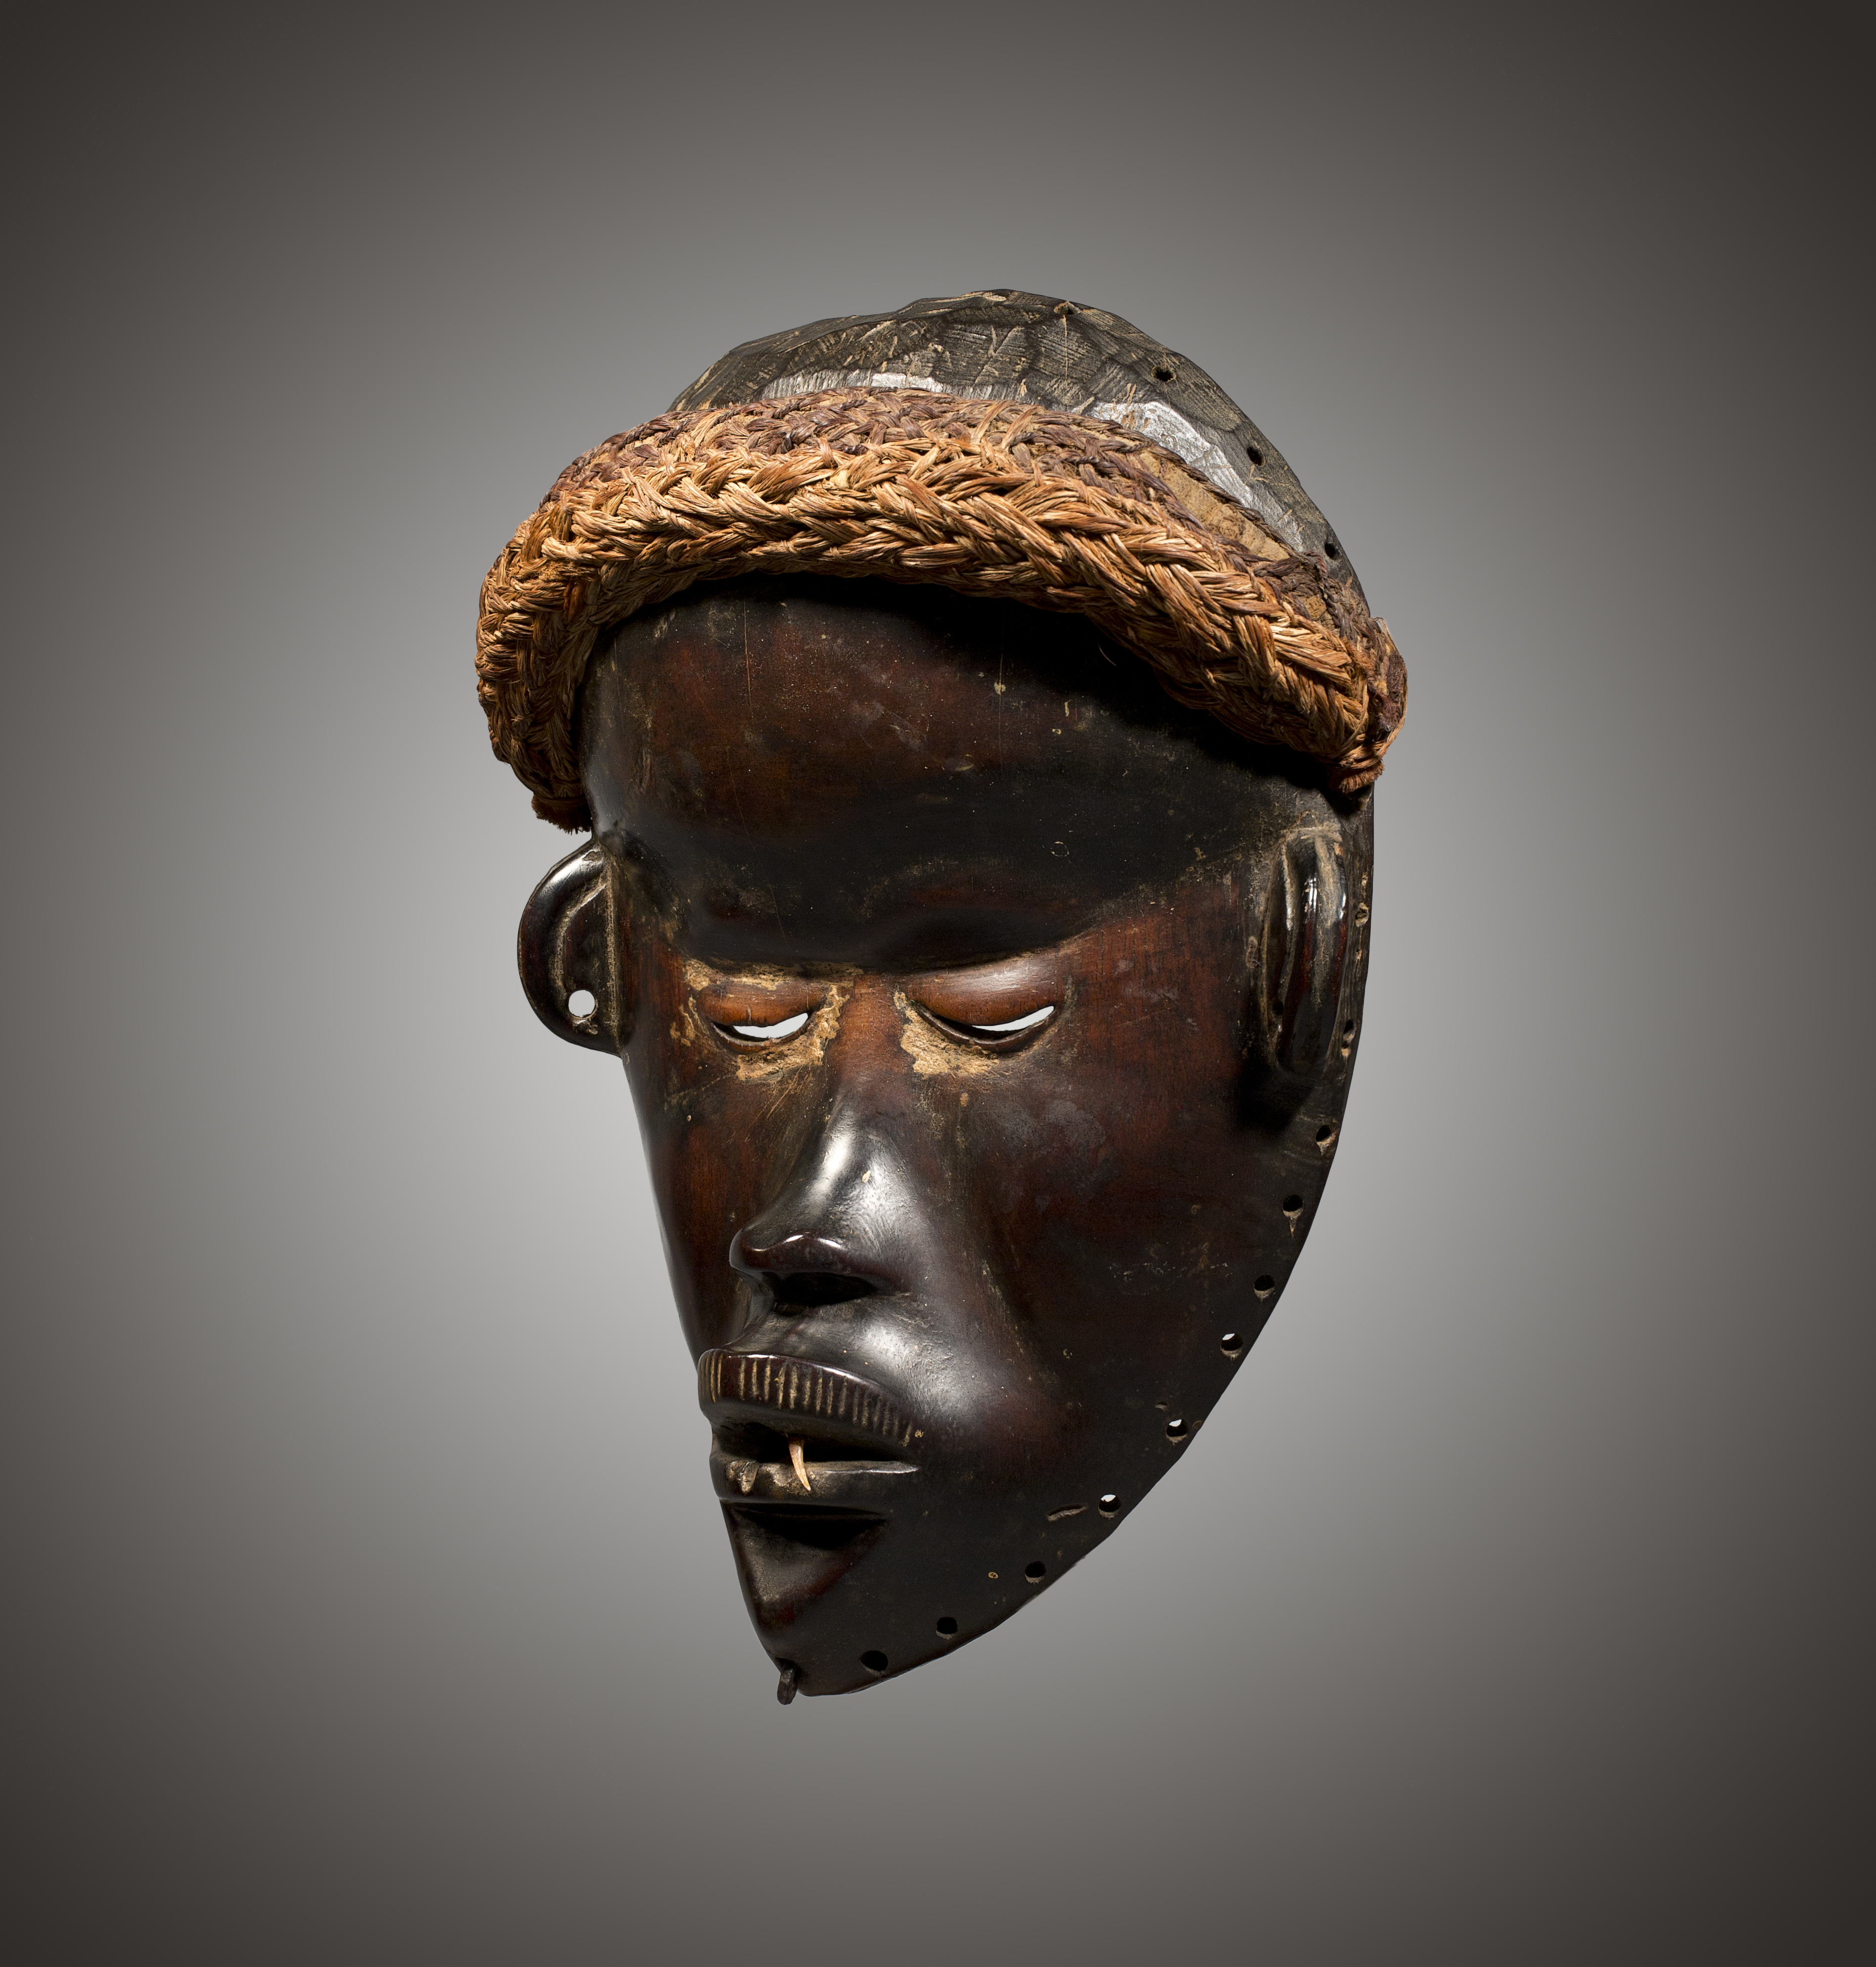 Maschera Dan Mano, Liberia Legno, fibra vegetale, osso, ferro 26 cm